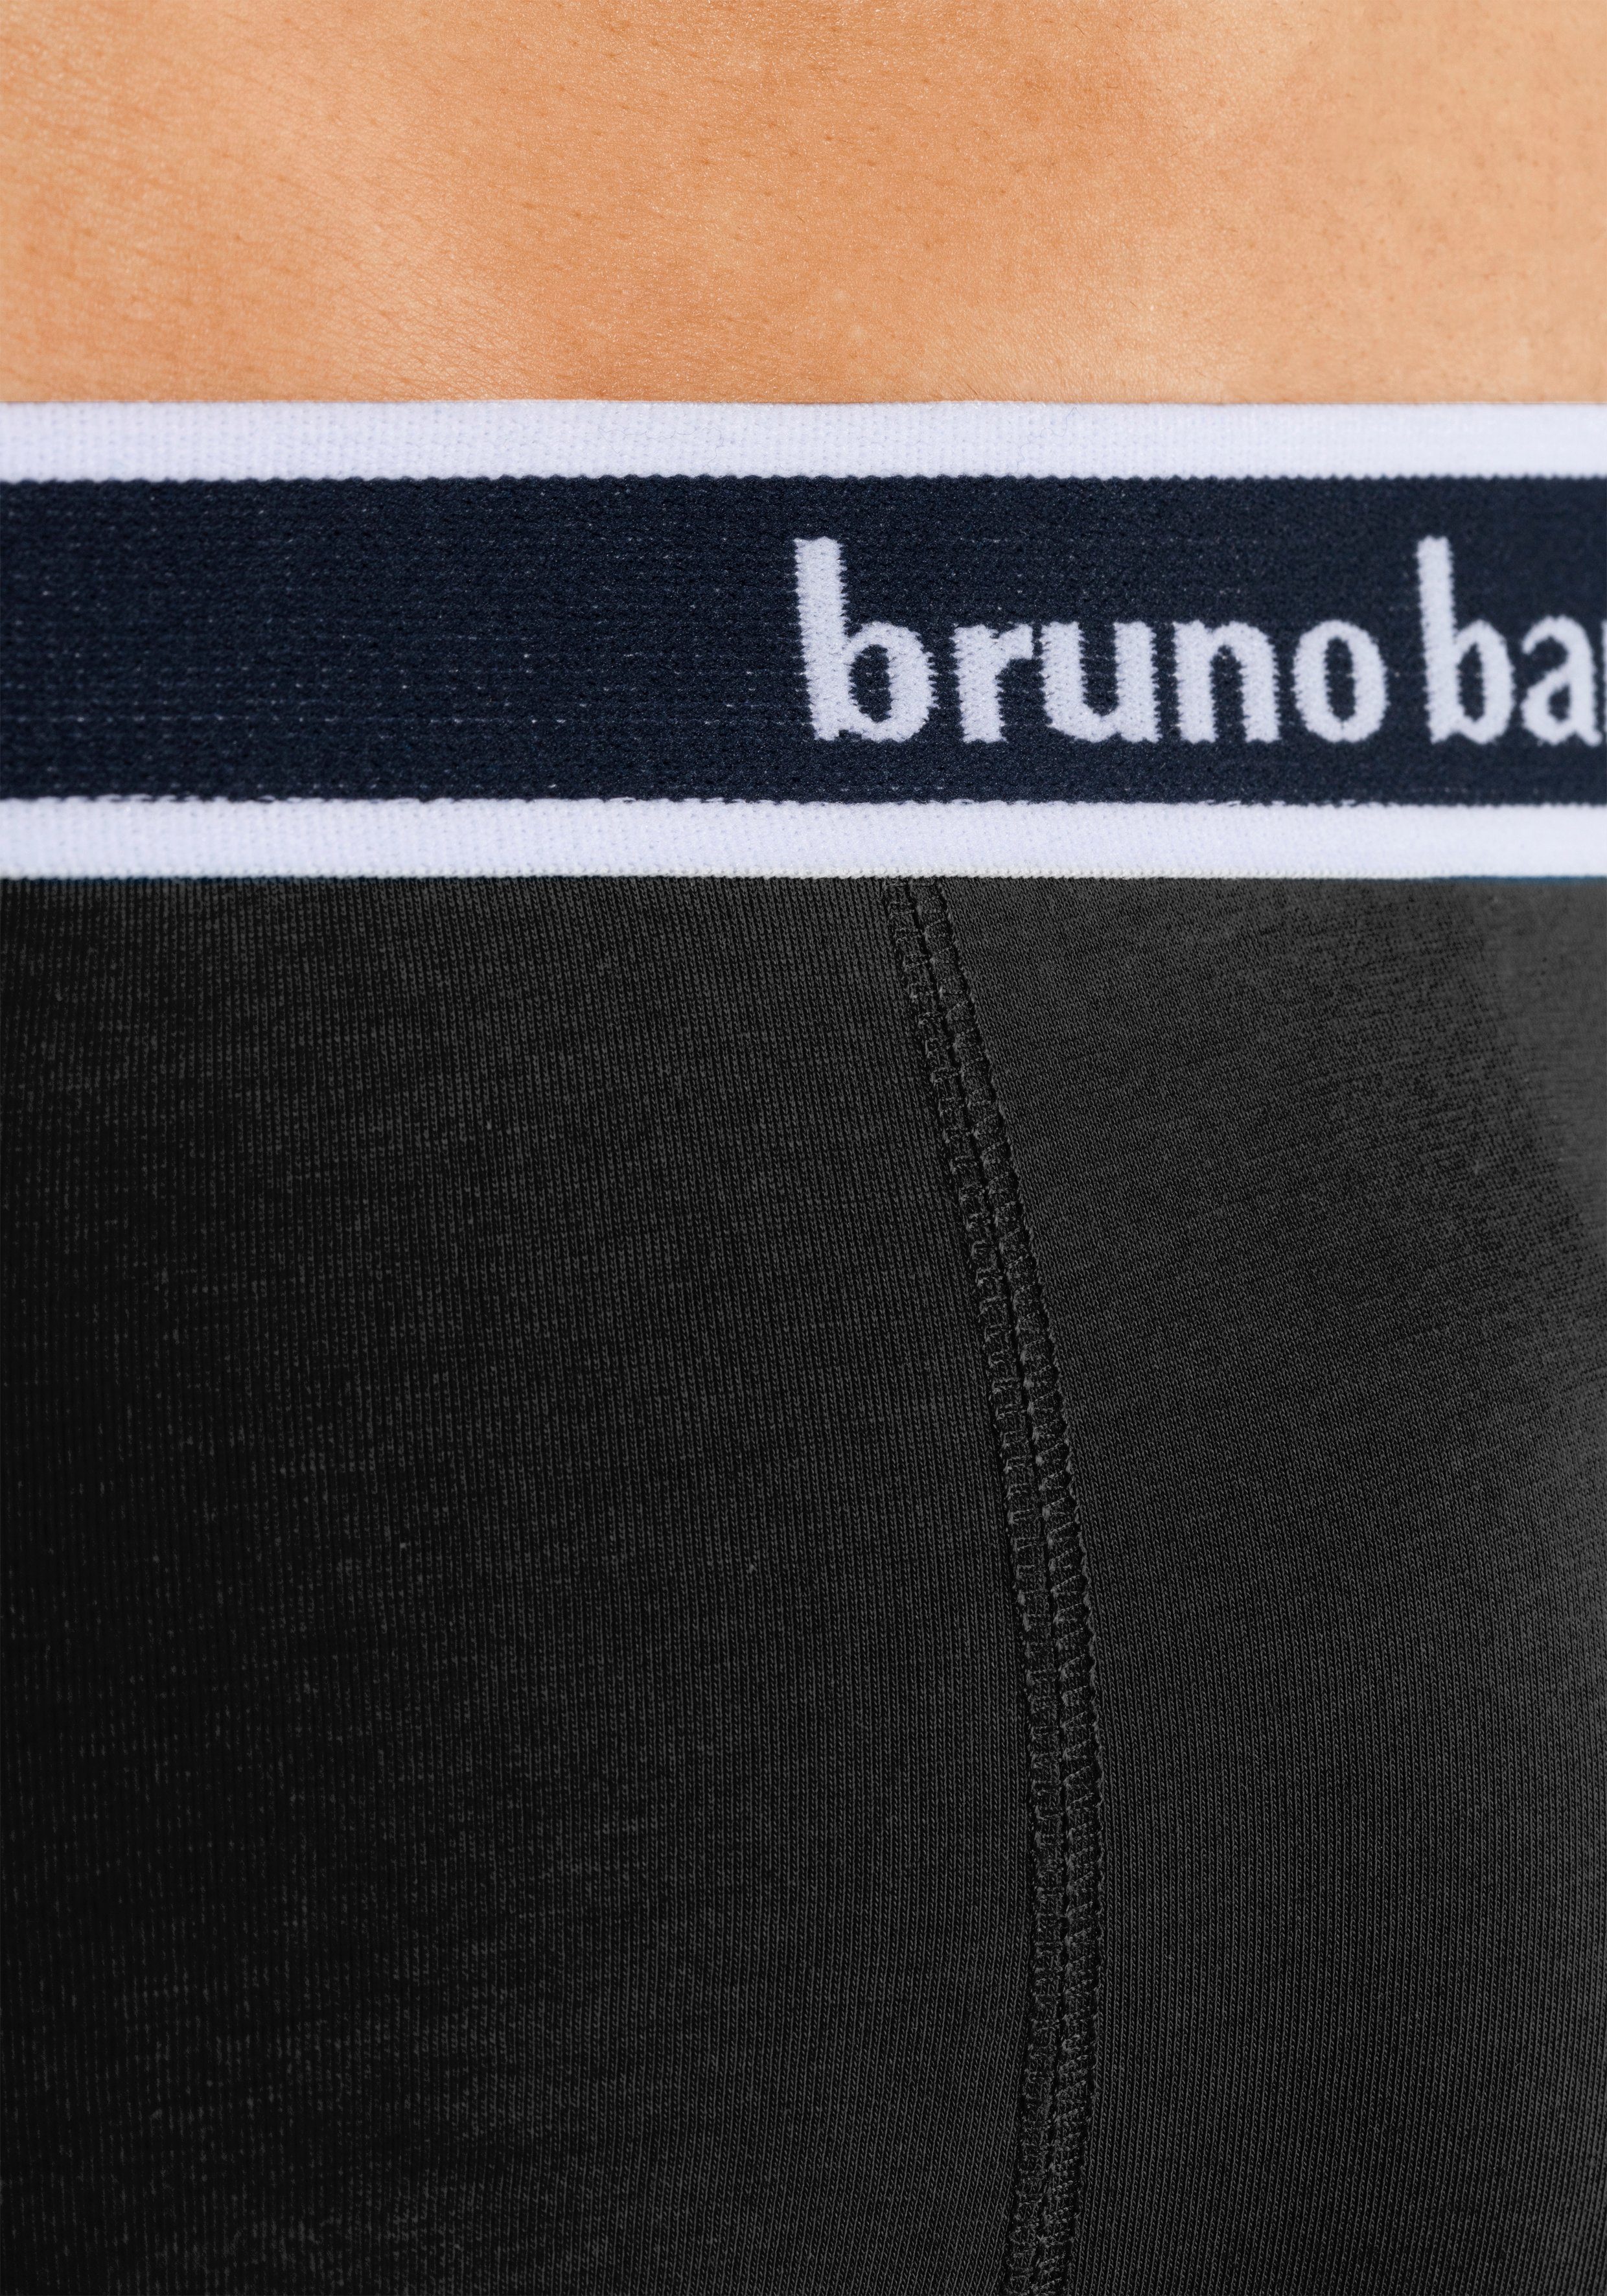 schwarz, rot, (Packung, Banani 4-St) grau-meliert, Boxer Bruno royalblau